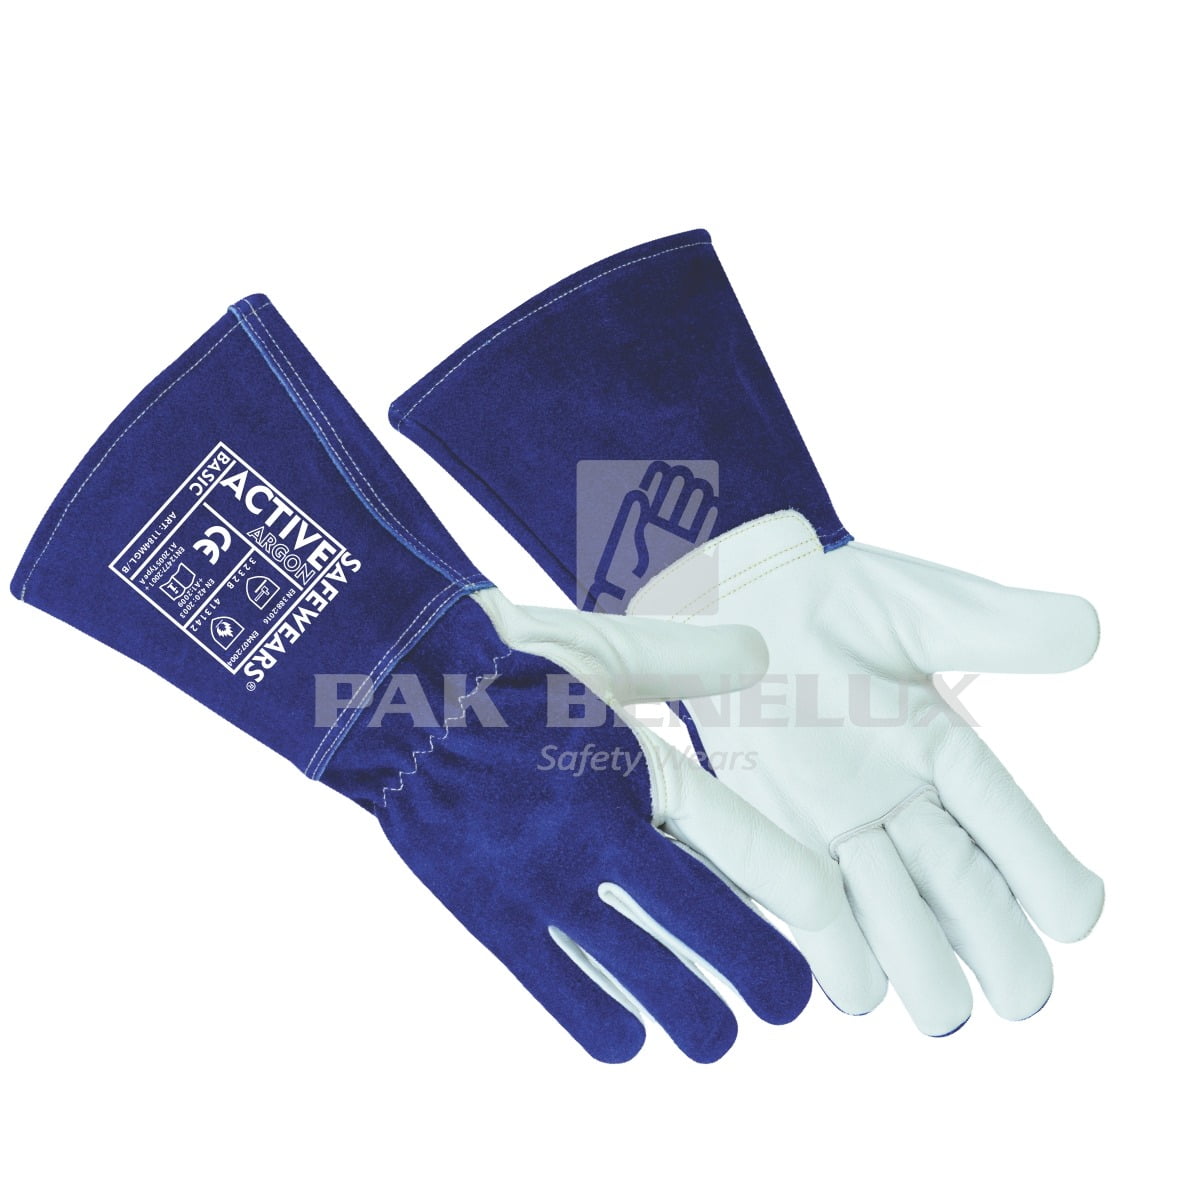 Argon Welding Gloves